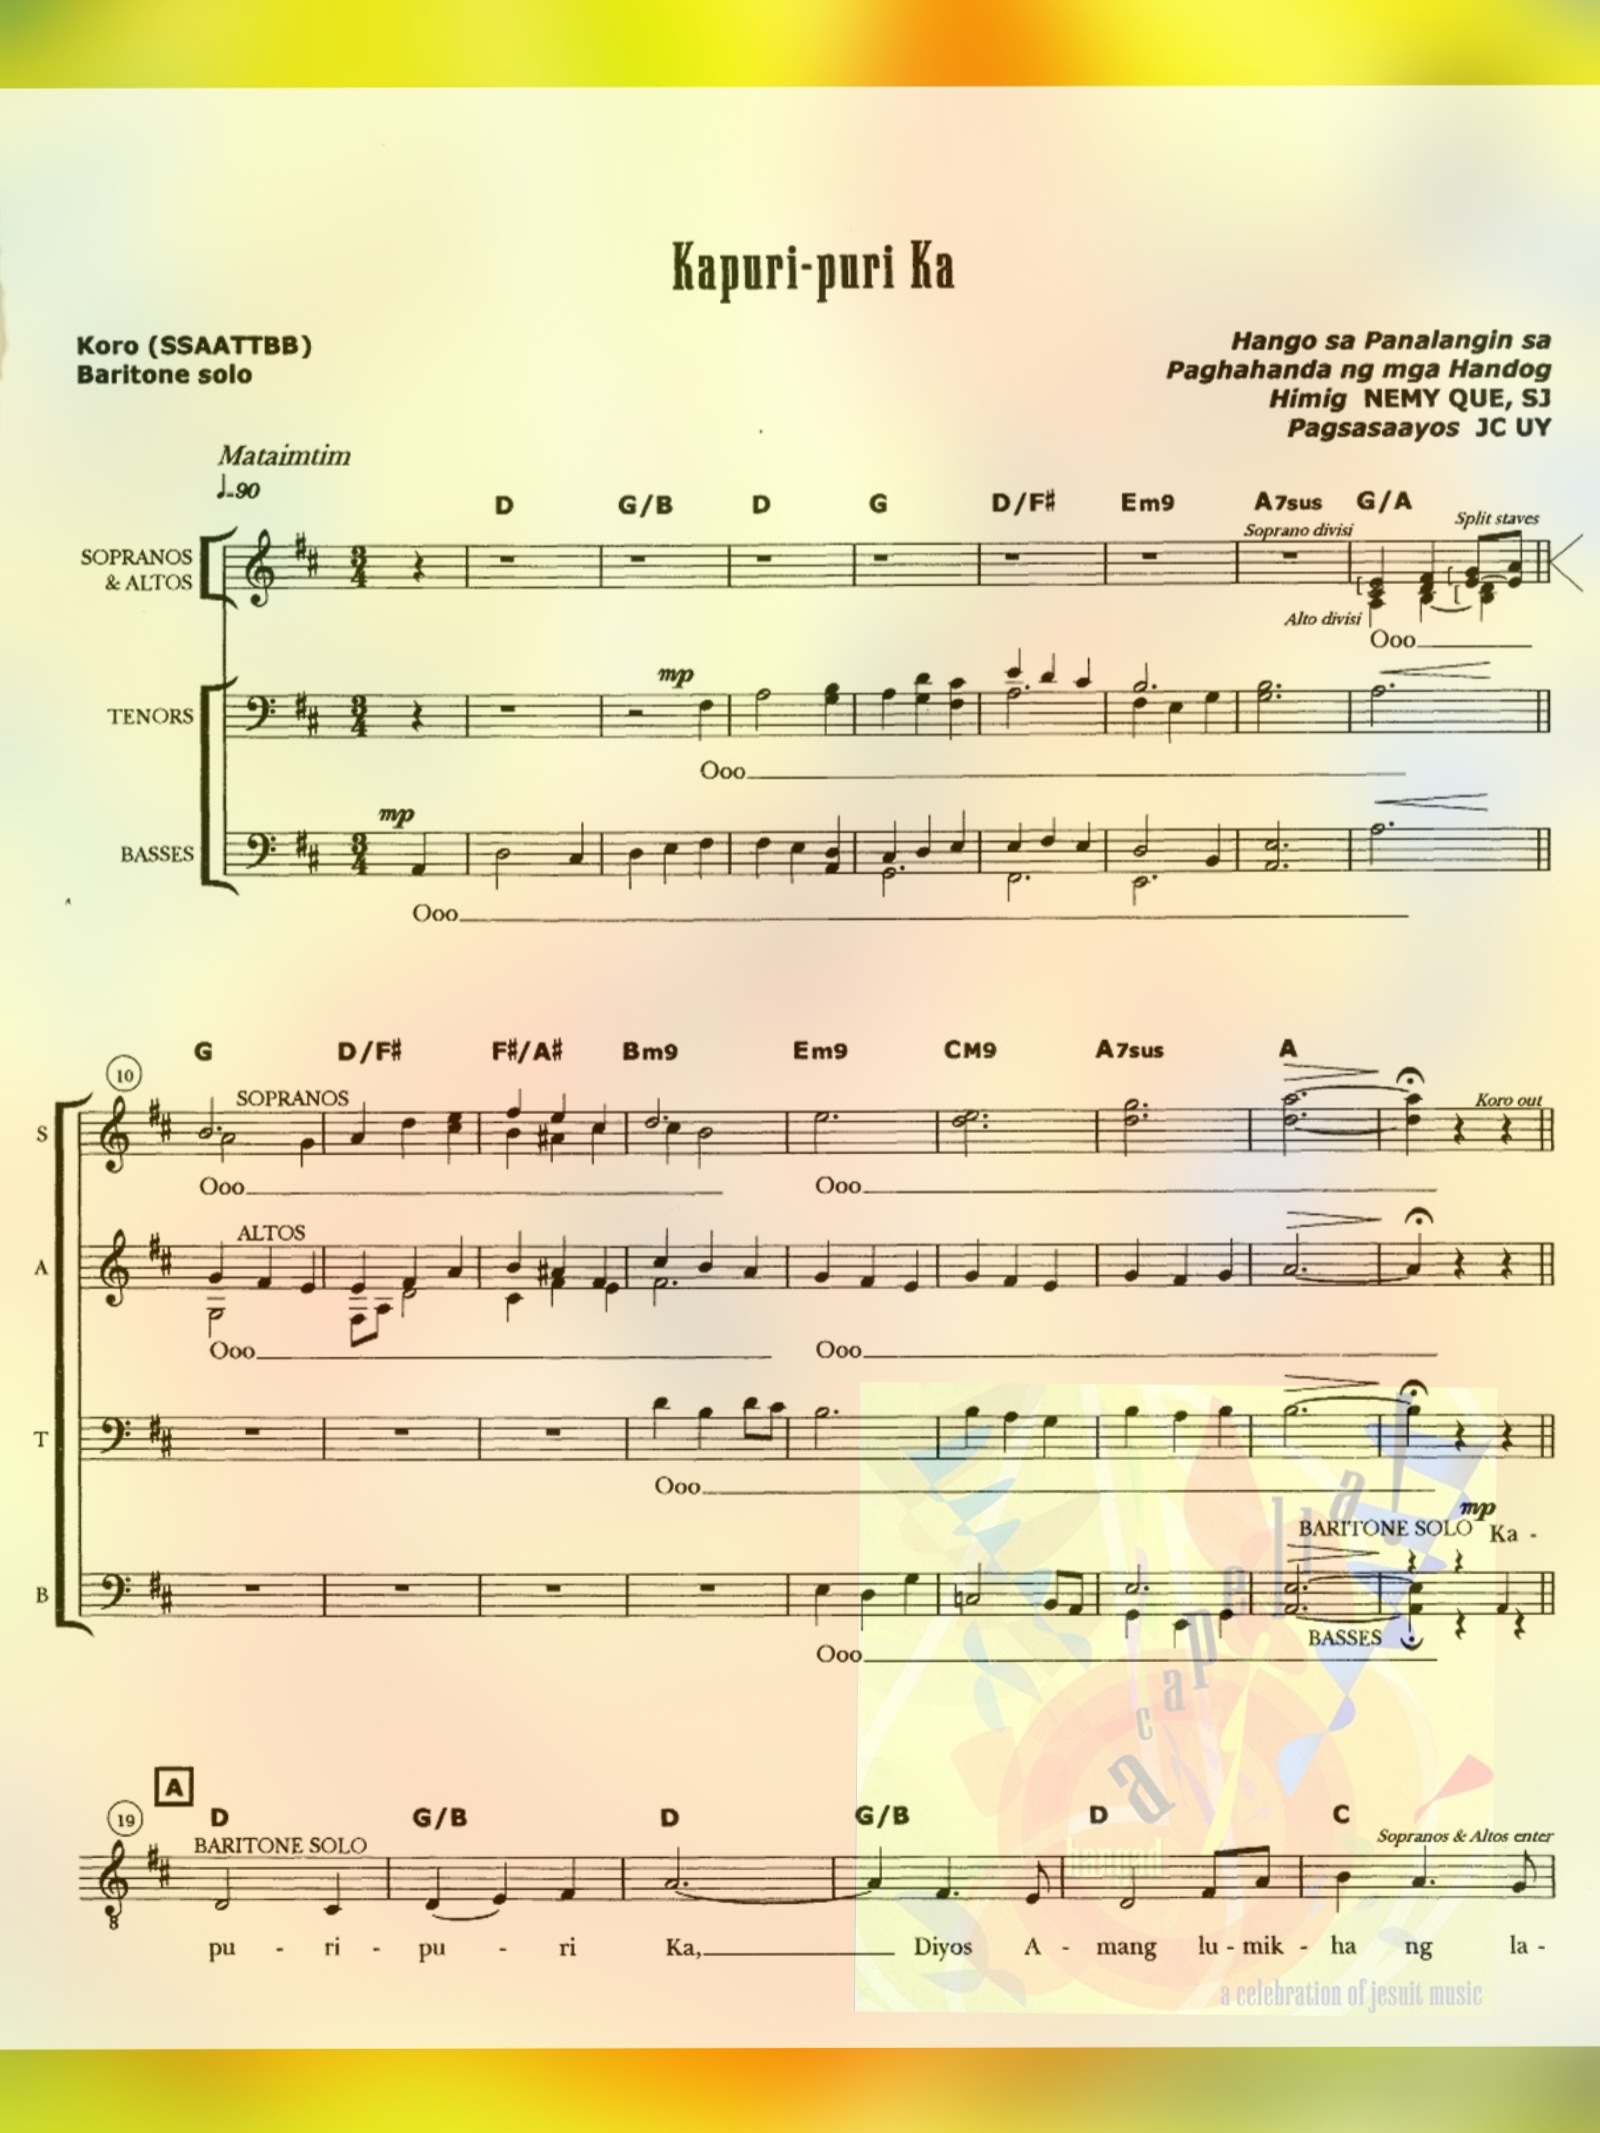 KAPURI-PURI KA a capella – Music Sheet